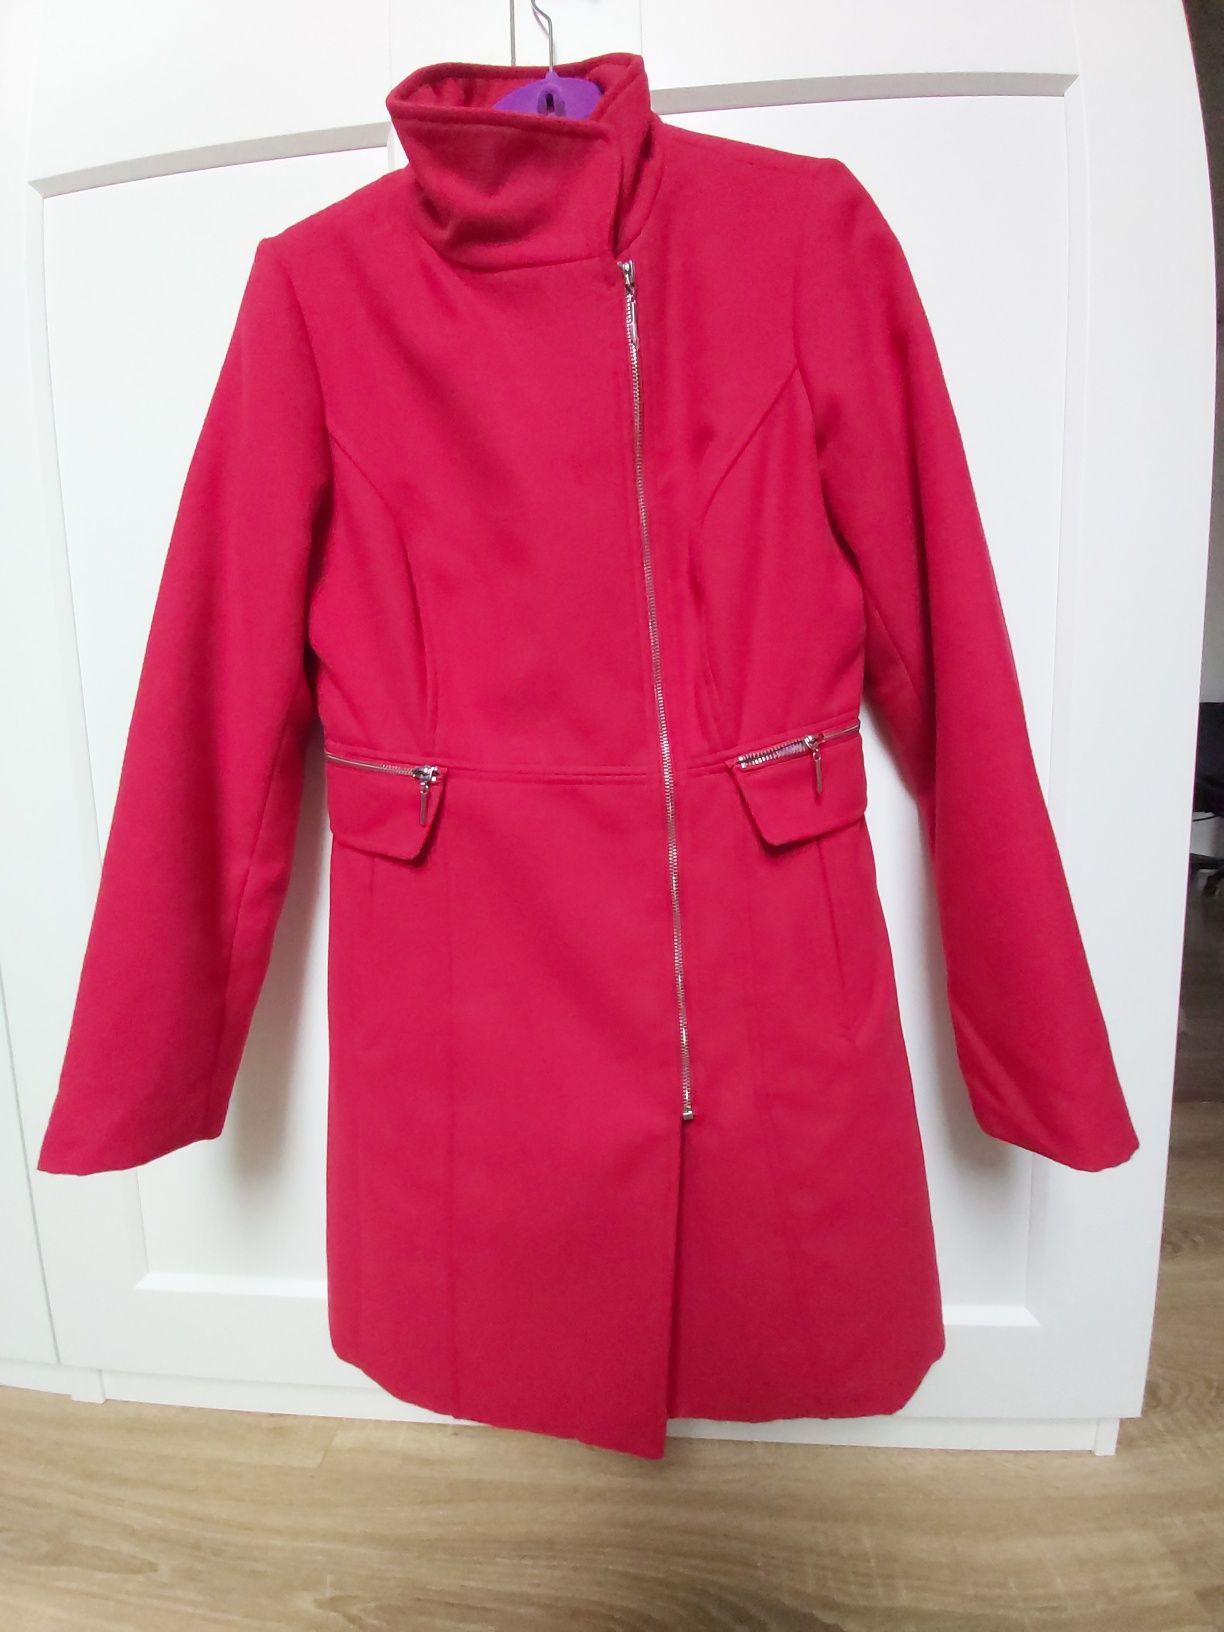 Czerwony taliowany płaszcz Mohito 40 jak nowy